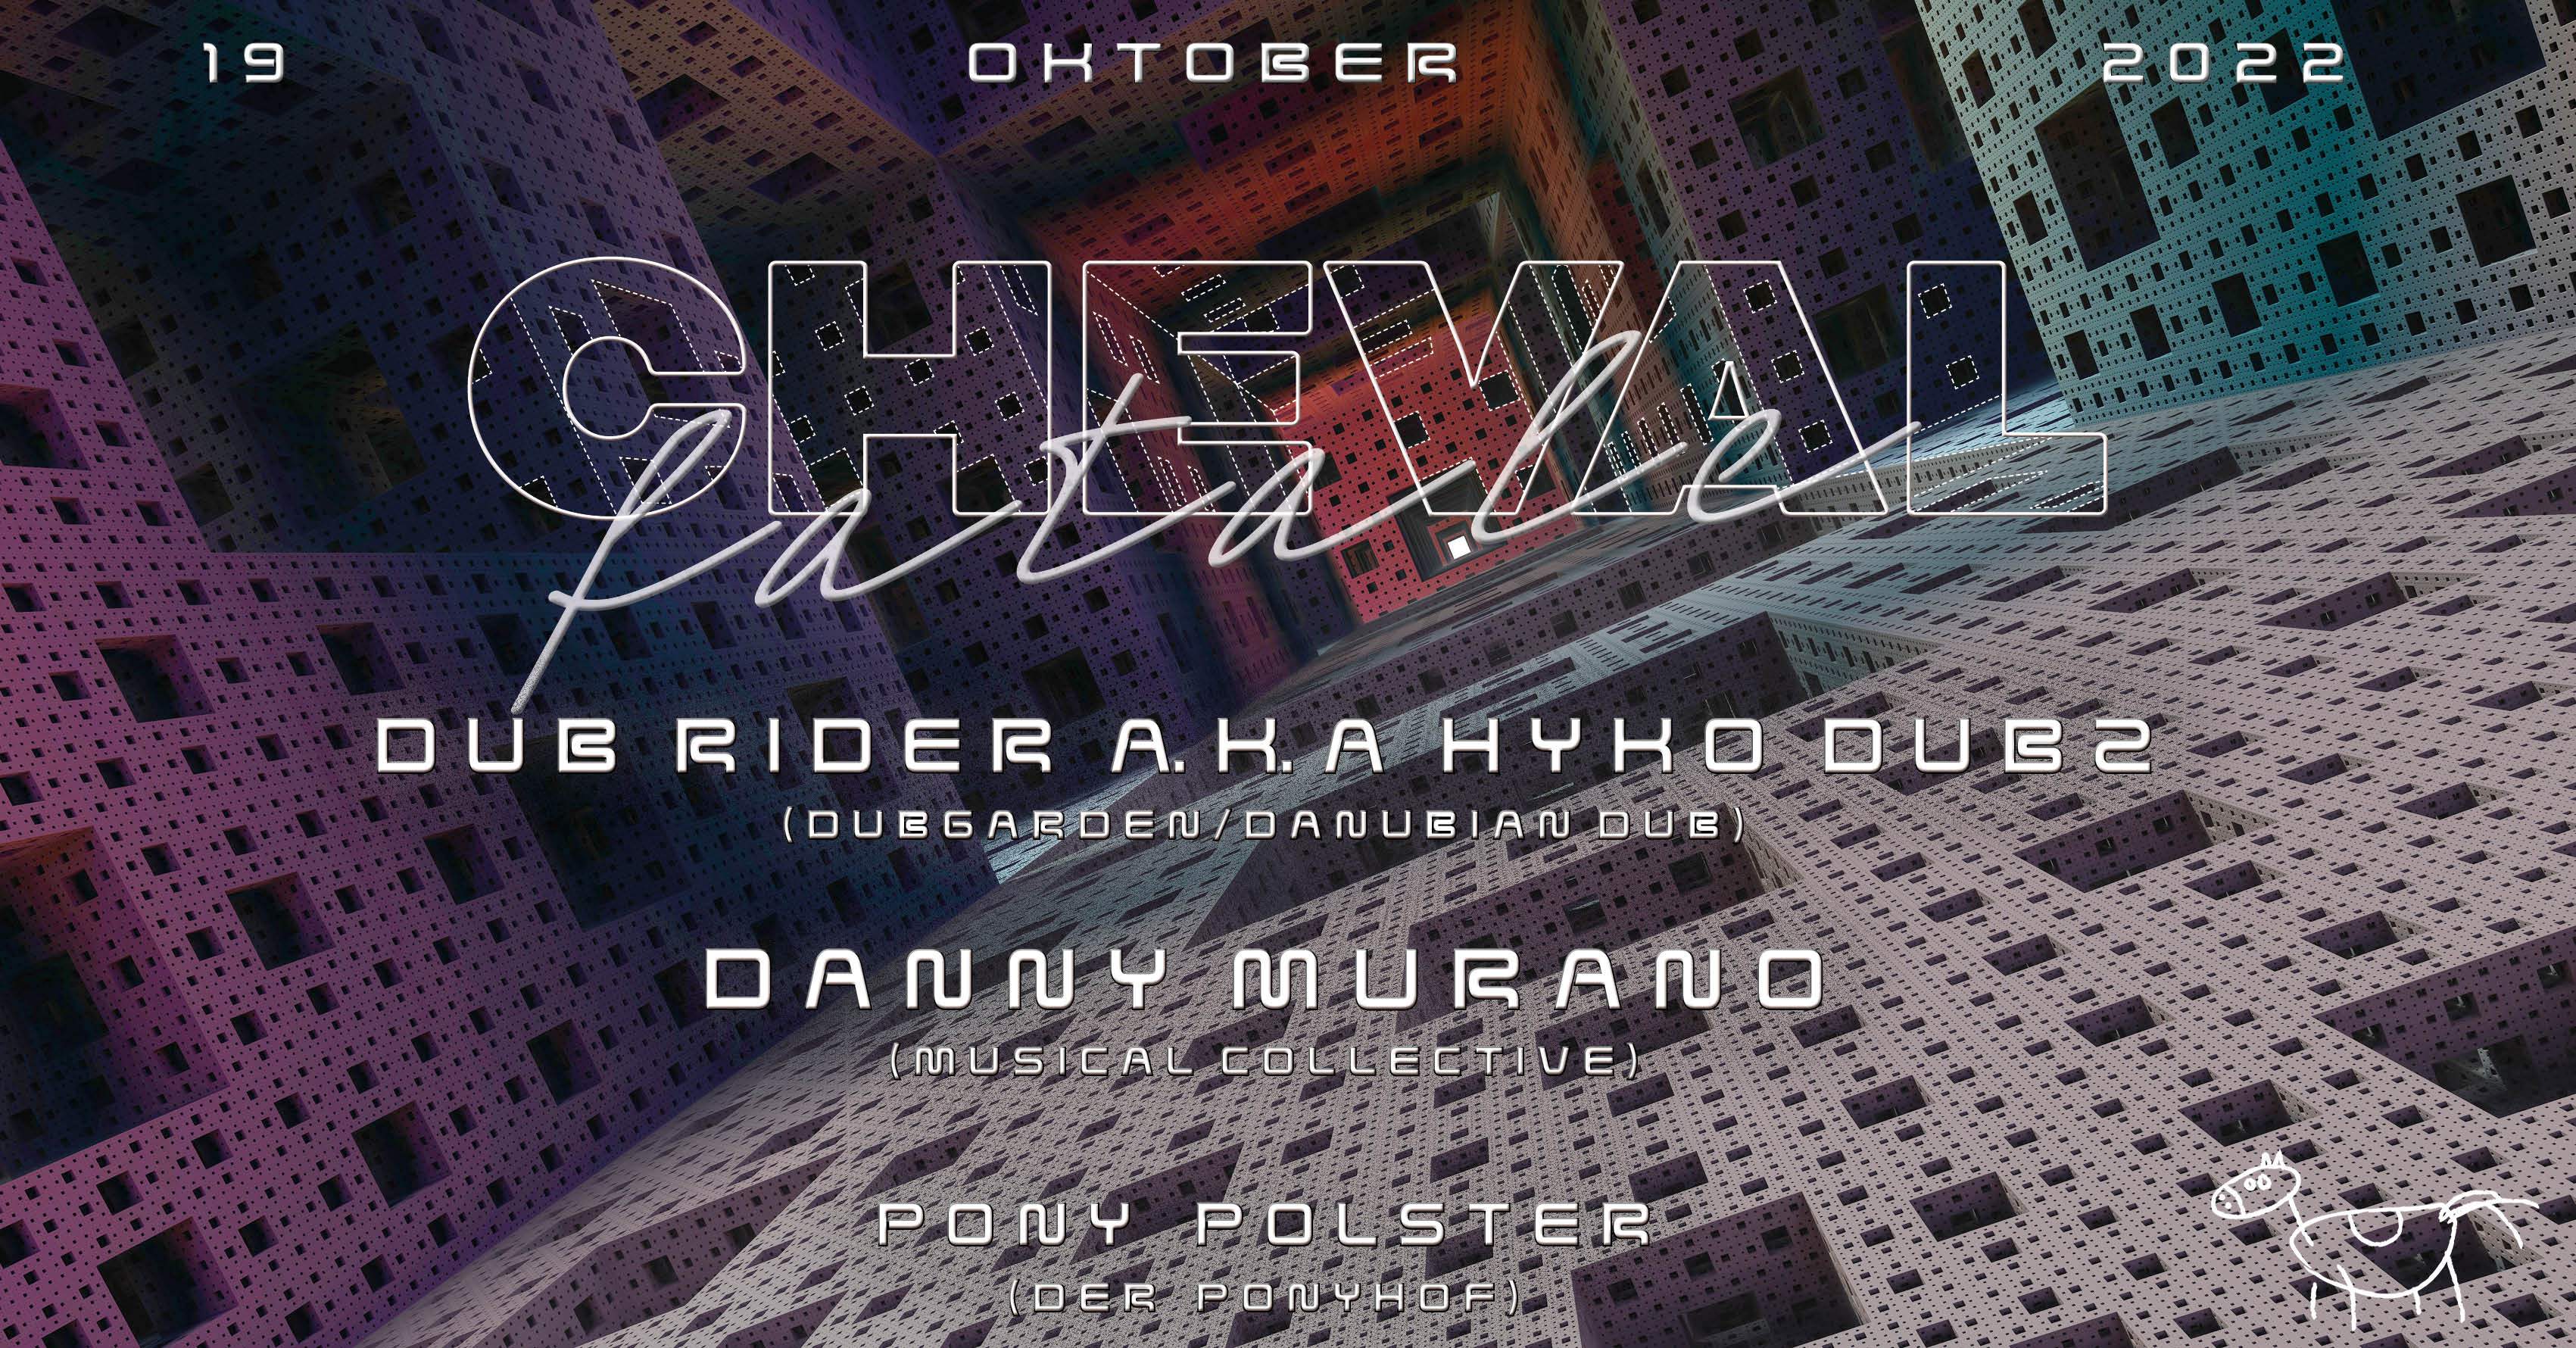 CHEVAL fatale with Danny Murano & Dub Rider aka Hypo Dubz - フライヤー表